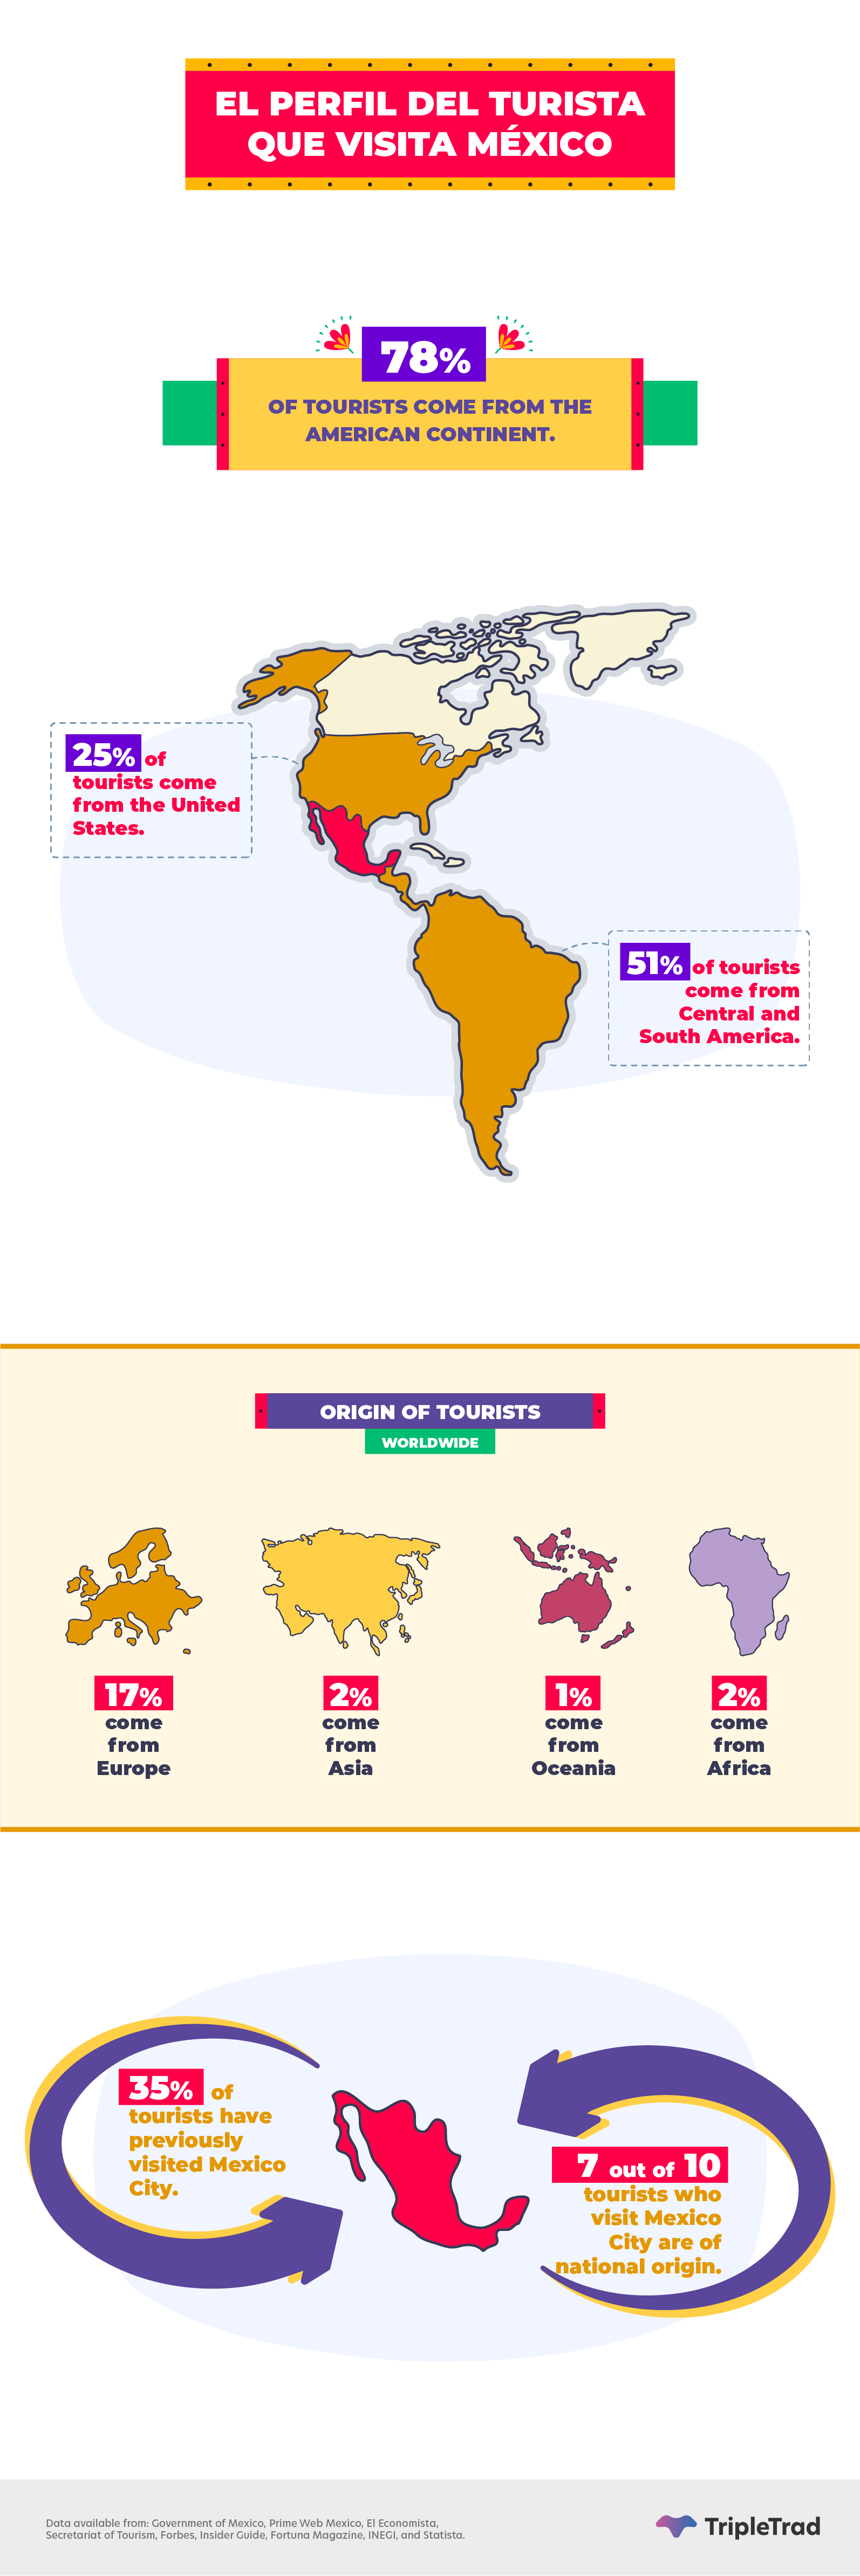 tourism mexico statistical data